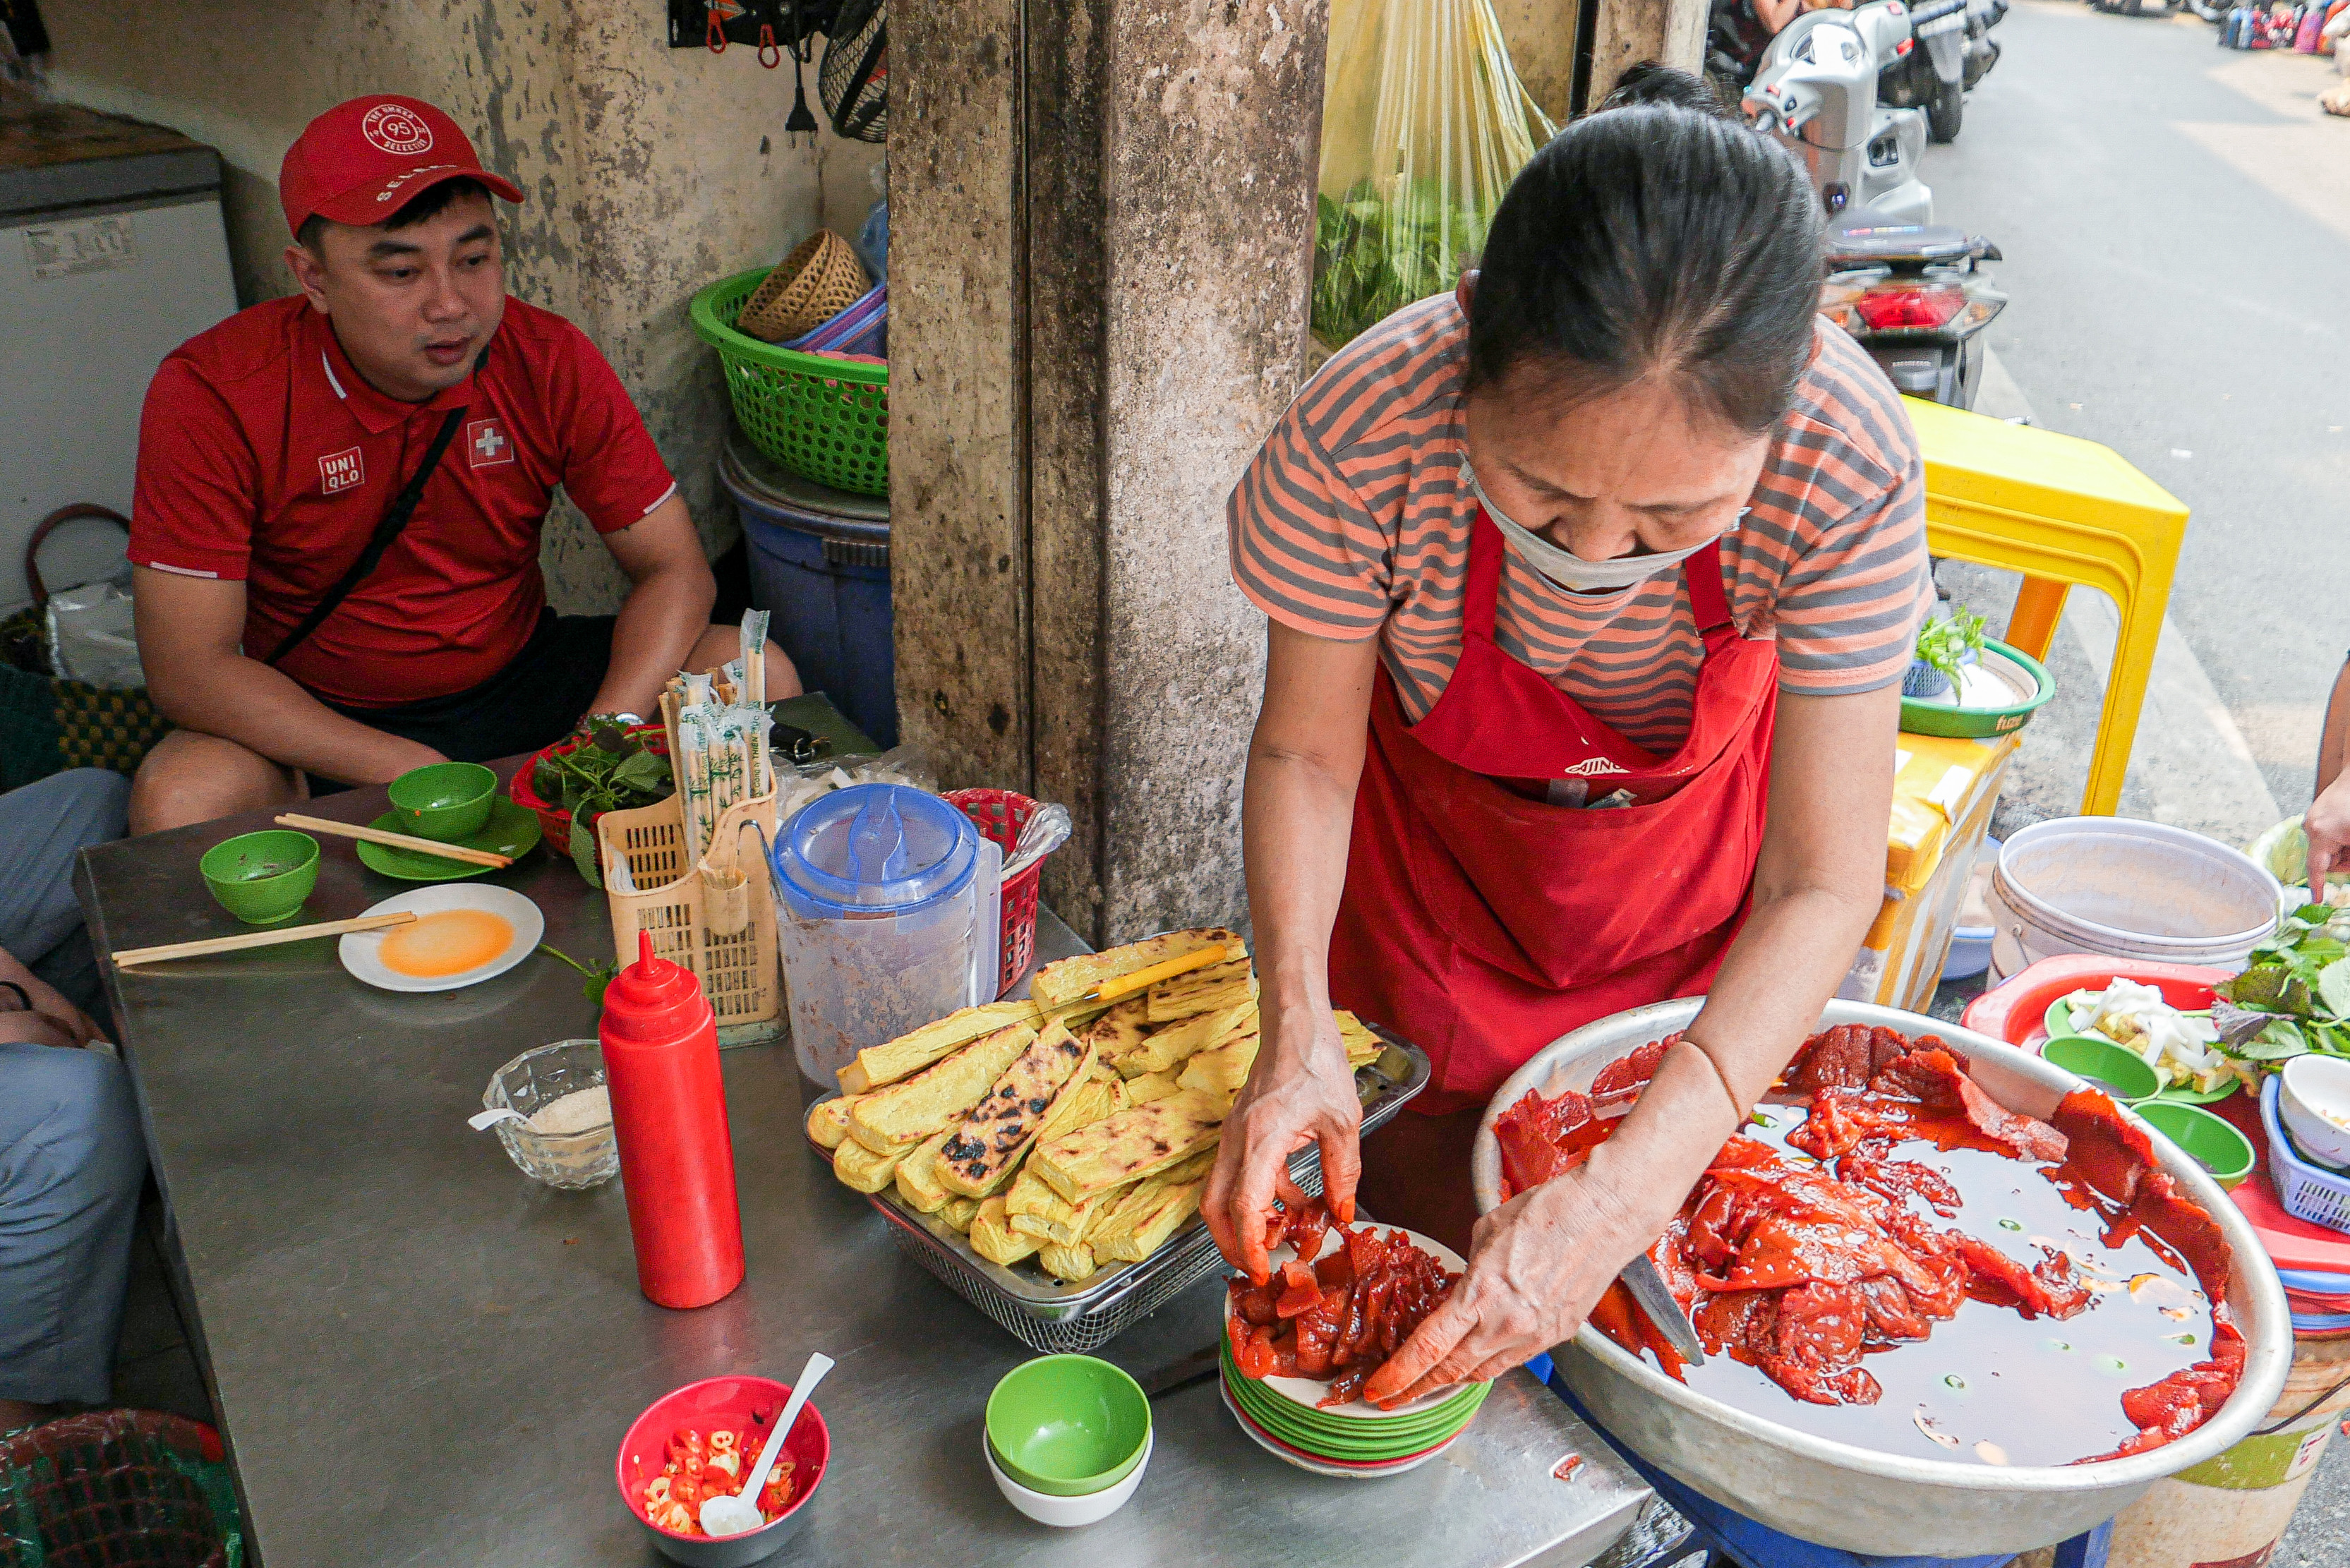 Bán 'sashimi Việt' đỏ au chấm mắm tôm, bà chủ U70 ở Hà Nội hết vèo 500 suất/ngày